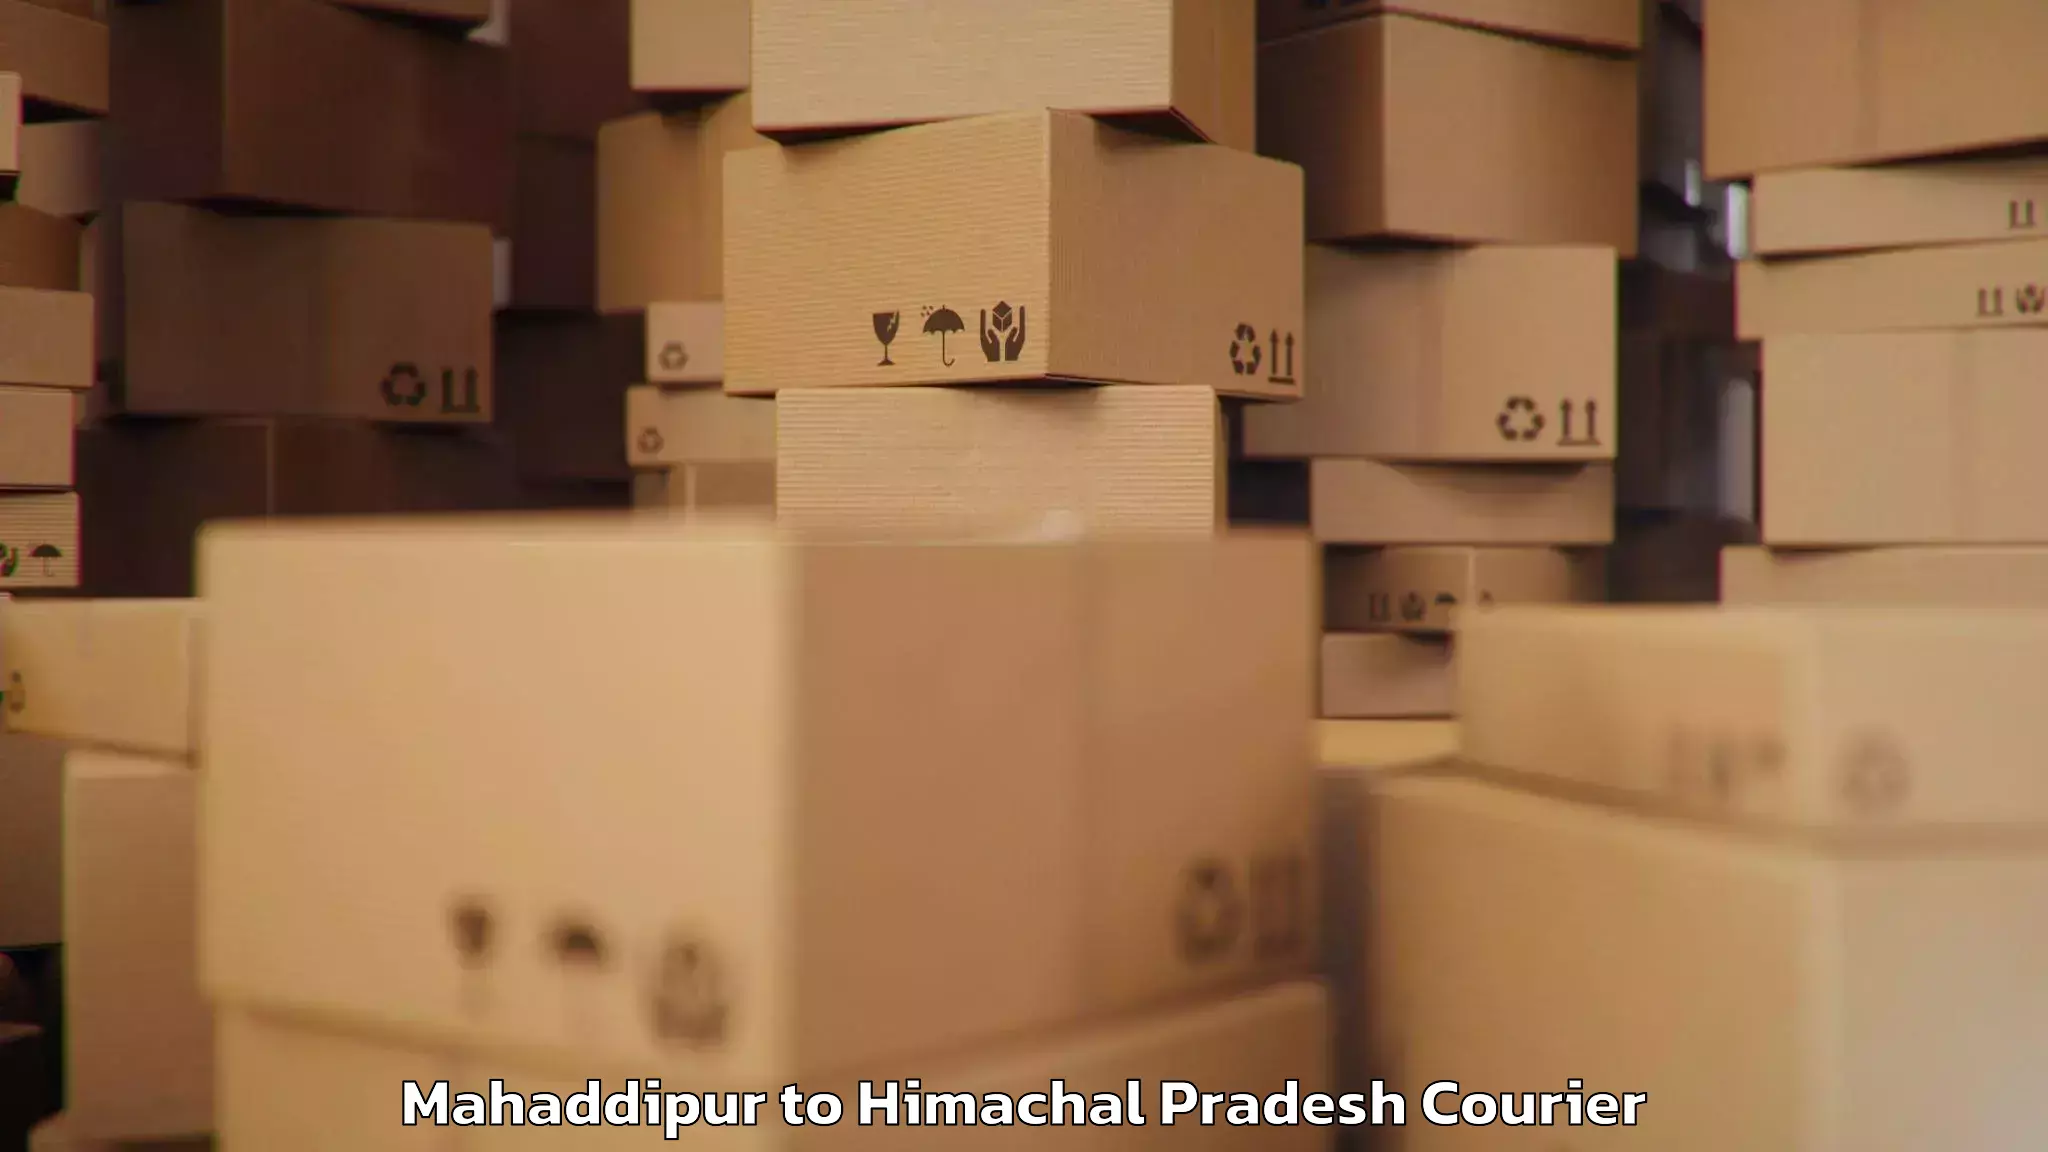 Holiday baggage shipping Mahaddipur to Himachal Pradesh